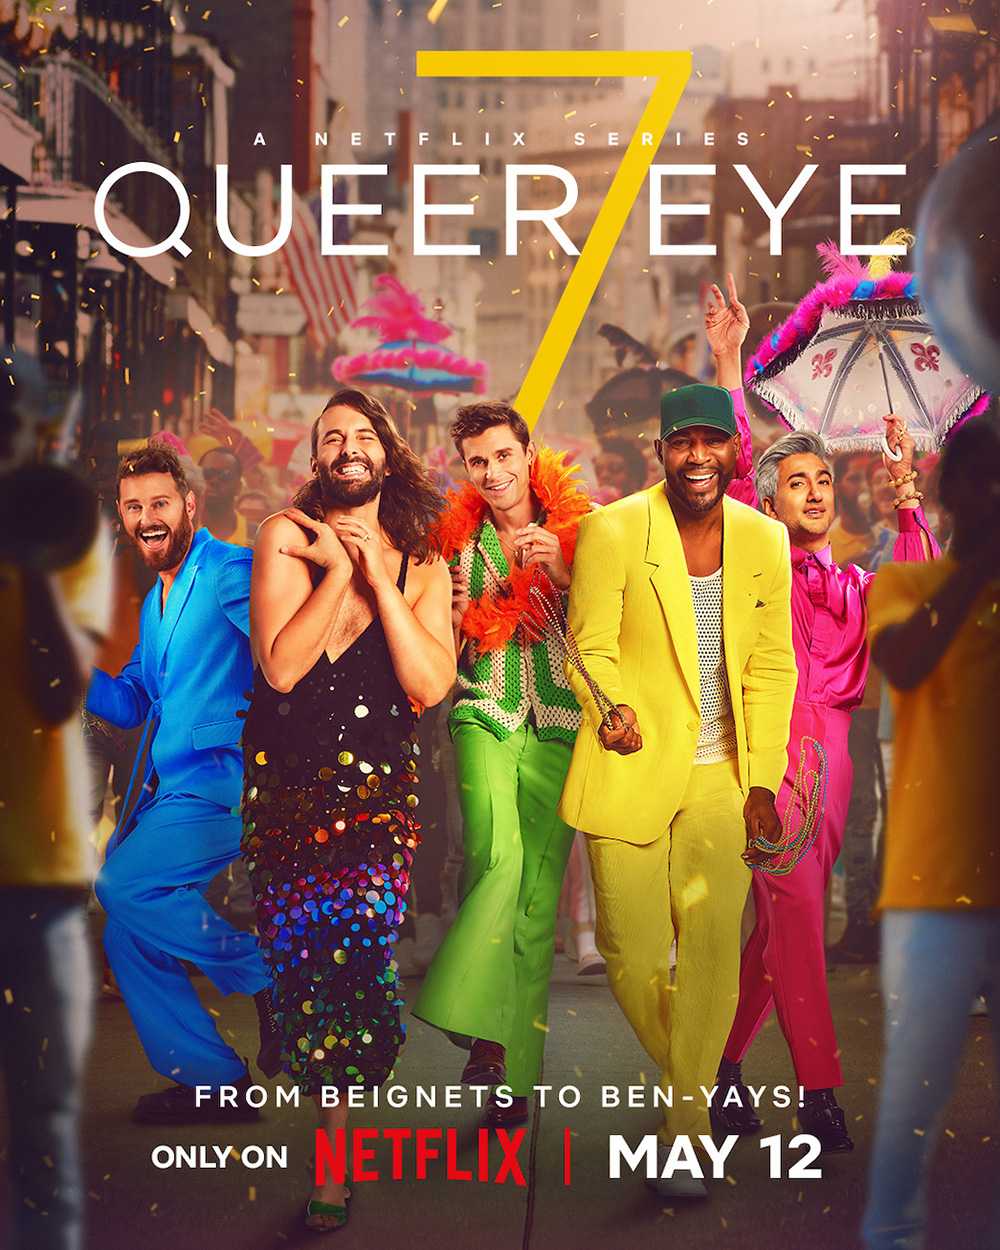 Queer eye season 7. More than a makeover!